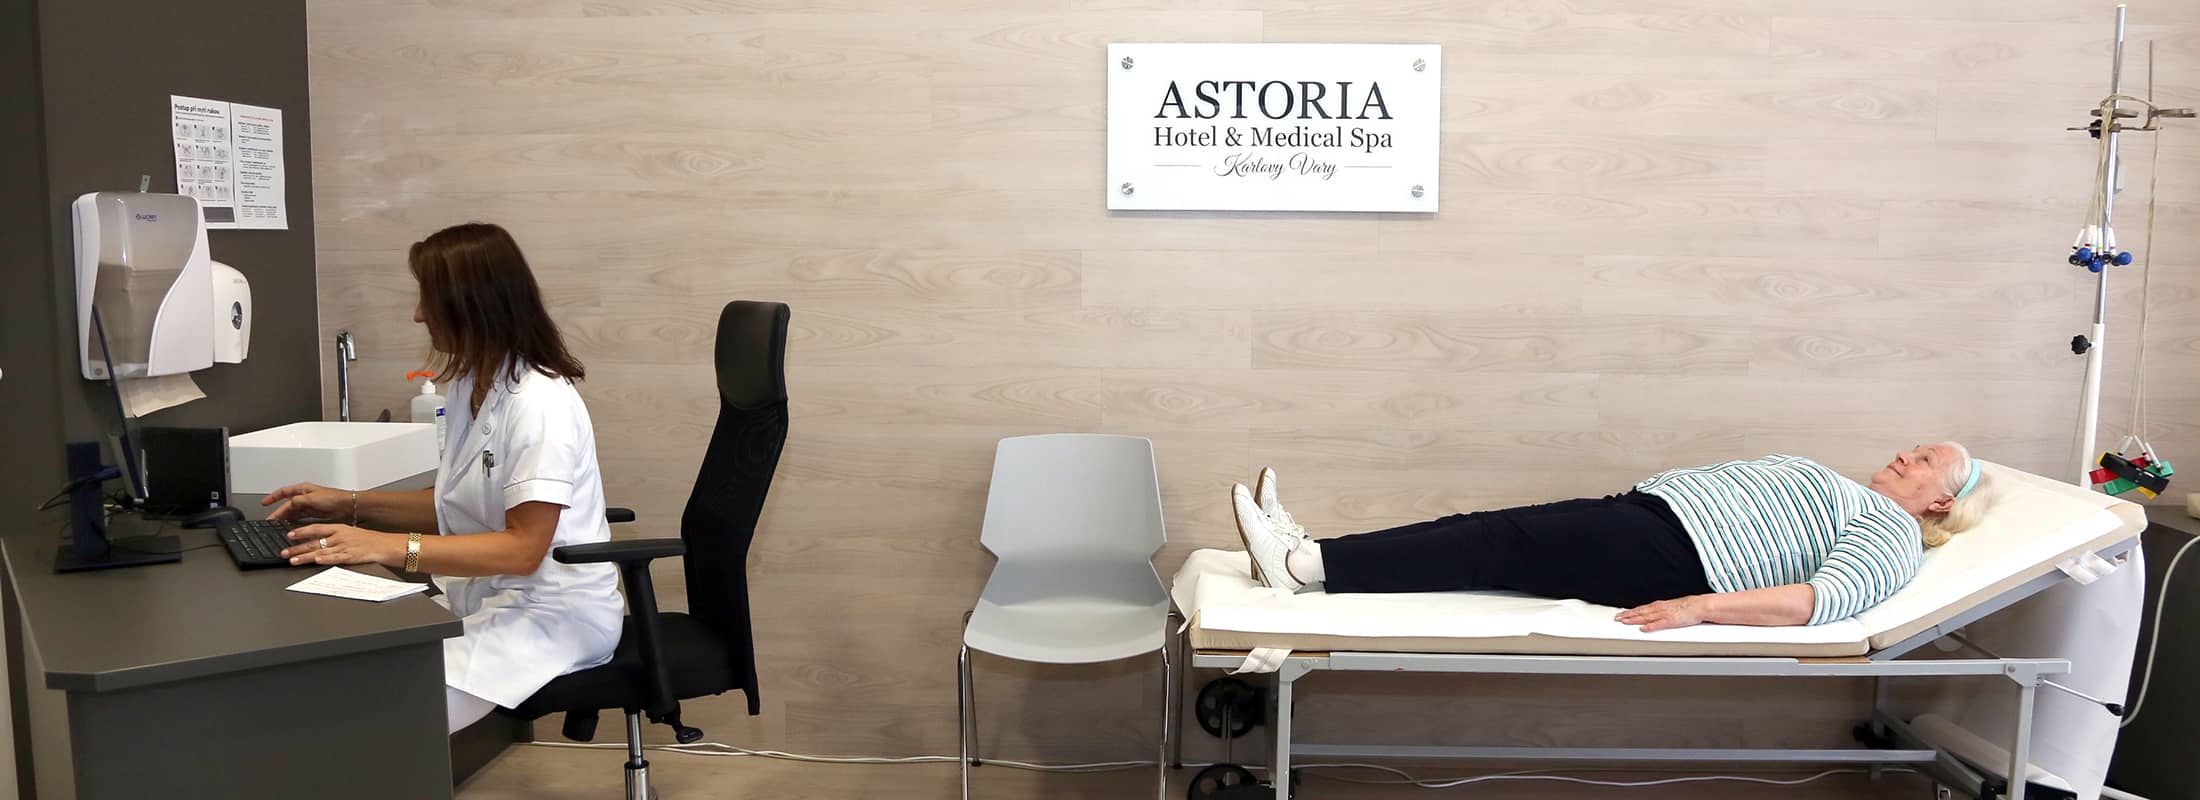 ASTORIA Hotel & Medical Spa slide_0